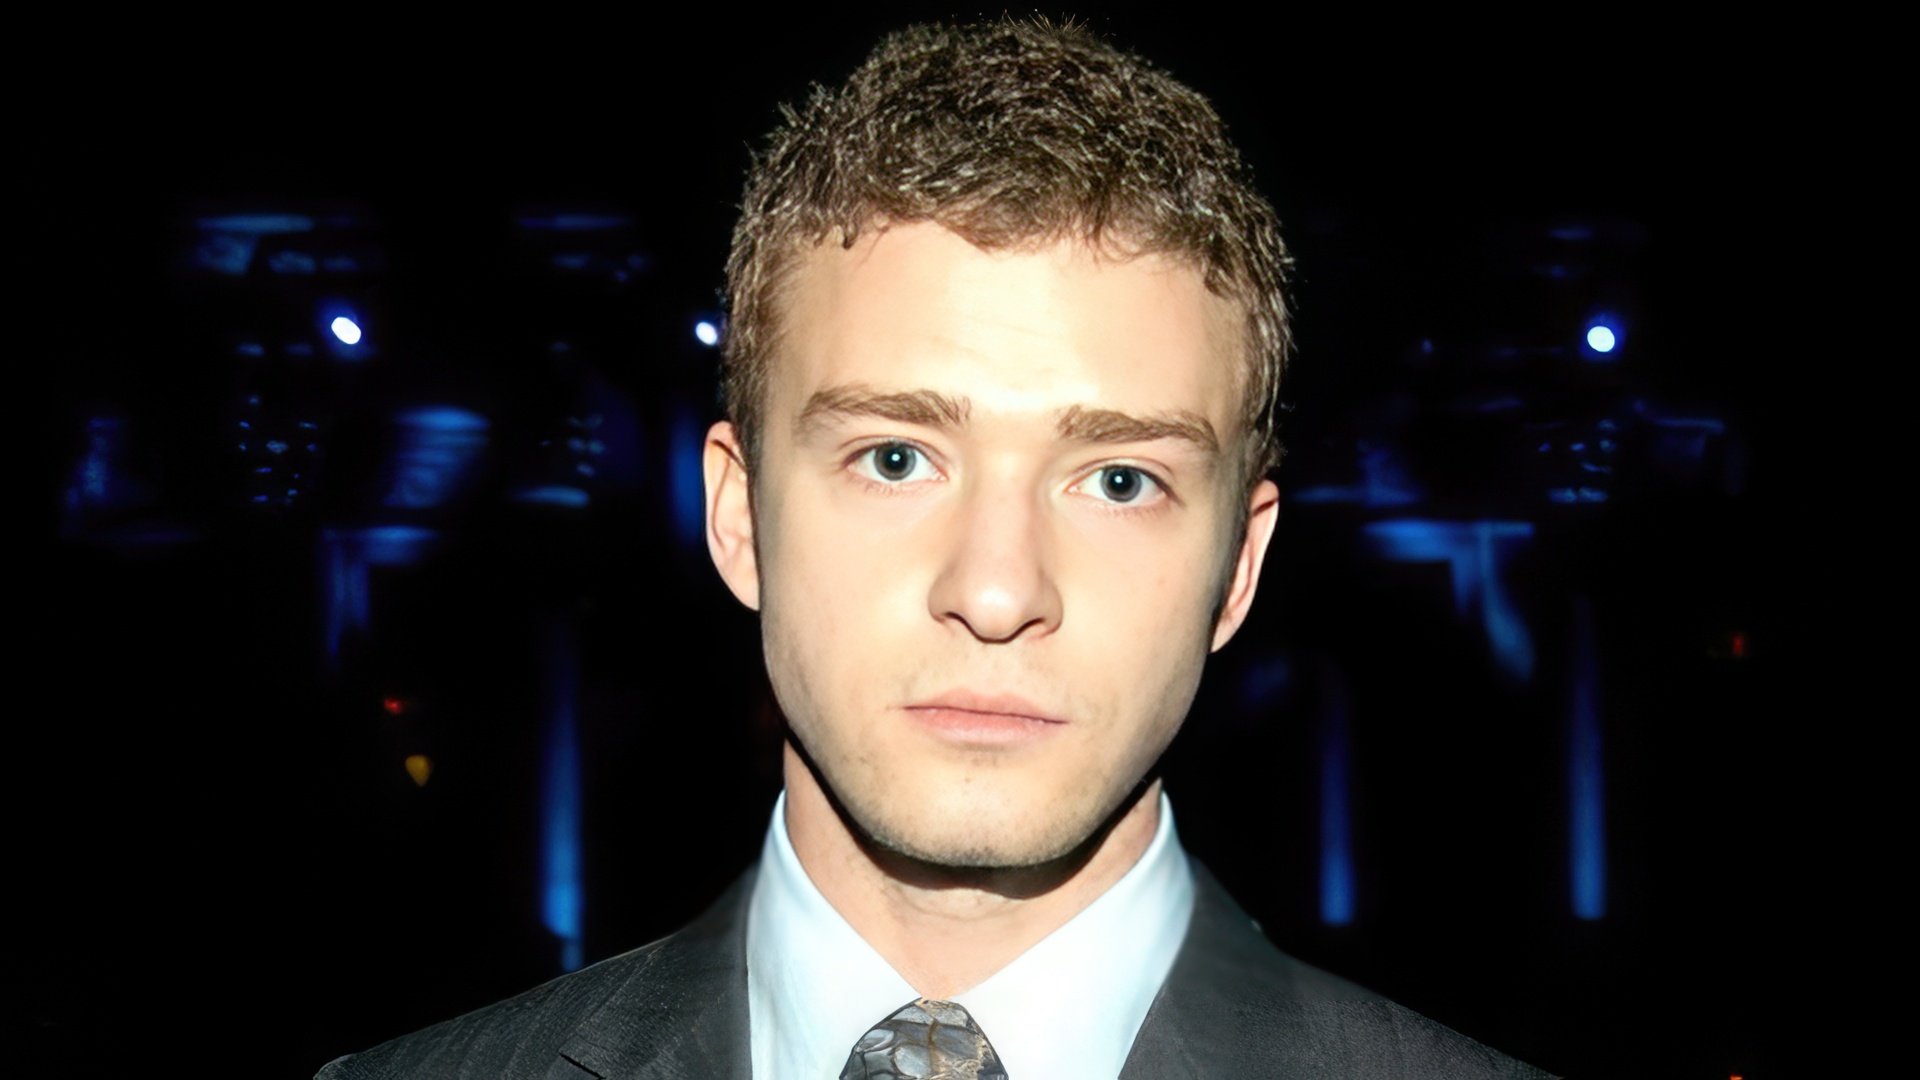 In 2002, Justin Timberlake began his solo career